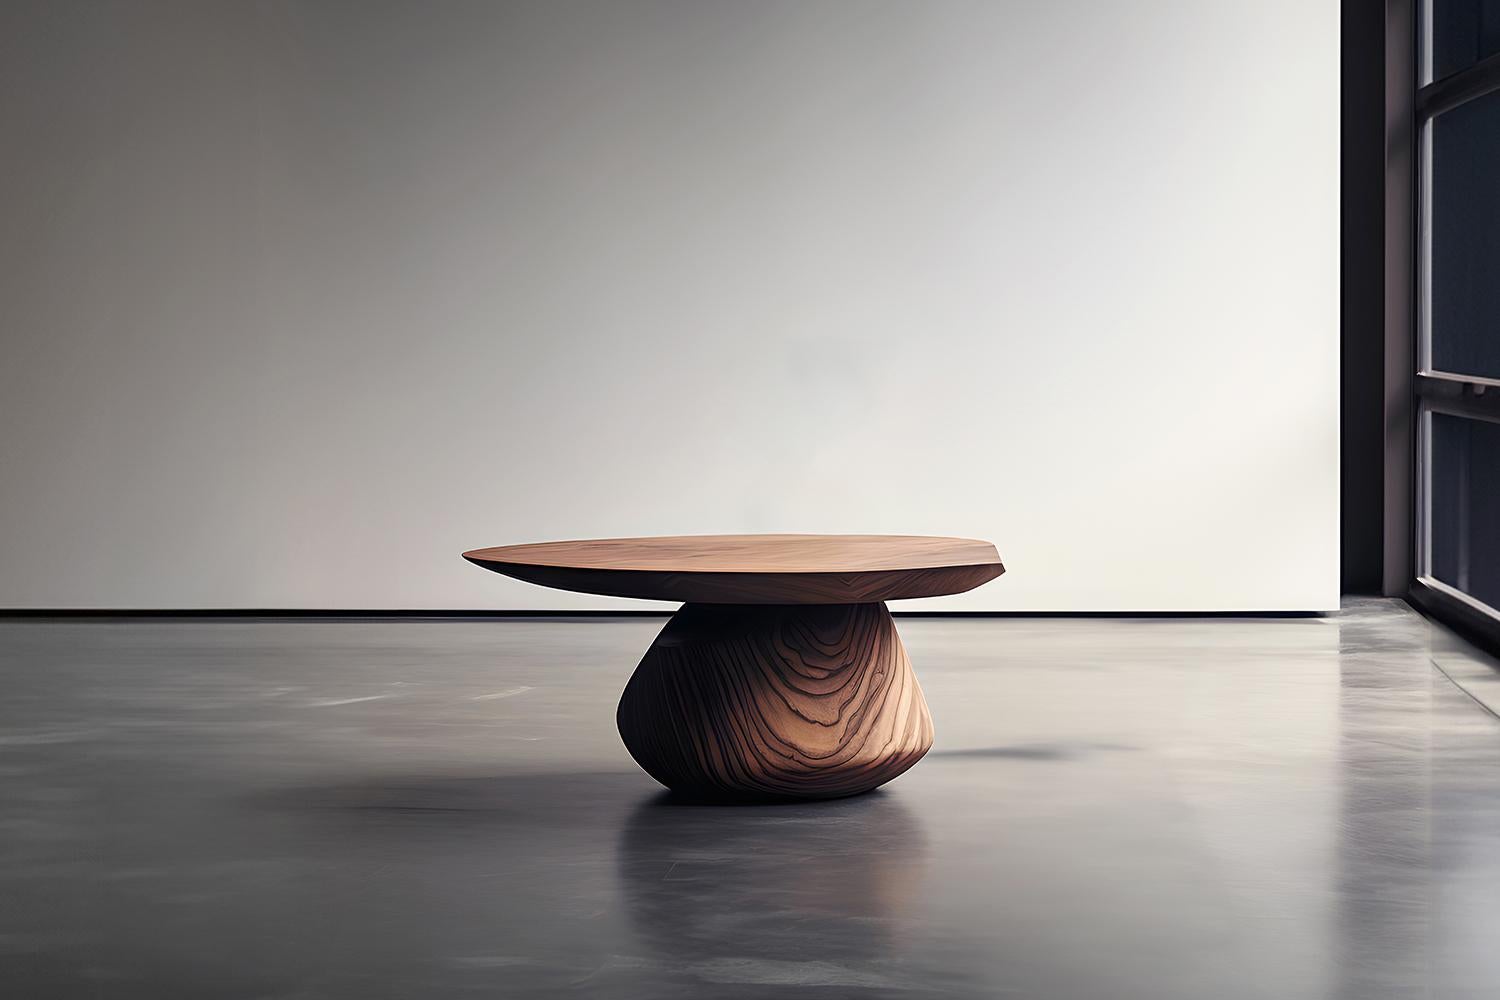 Skulpturaler Couchtisch aus Massivholz, Center Table Solace S33 von Joel Escalona


Die Tischserie Solace, entworfen von Joel Escalona, ist eine Möbelkollektion, die dank ihrer sinnlichen, dichten und unregelmäßigen Formen Ausgewogenheit und Präsenz